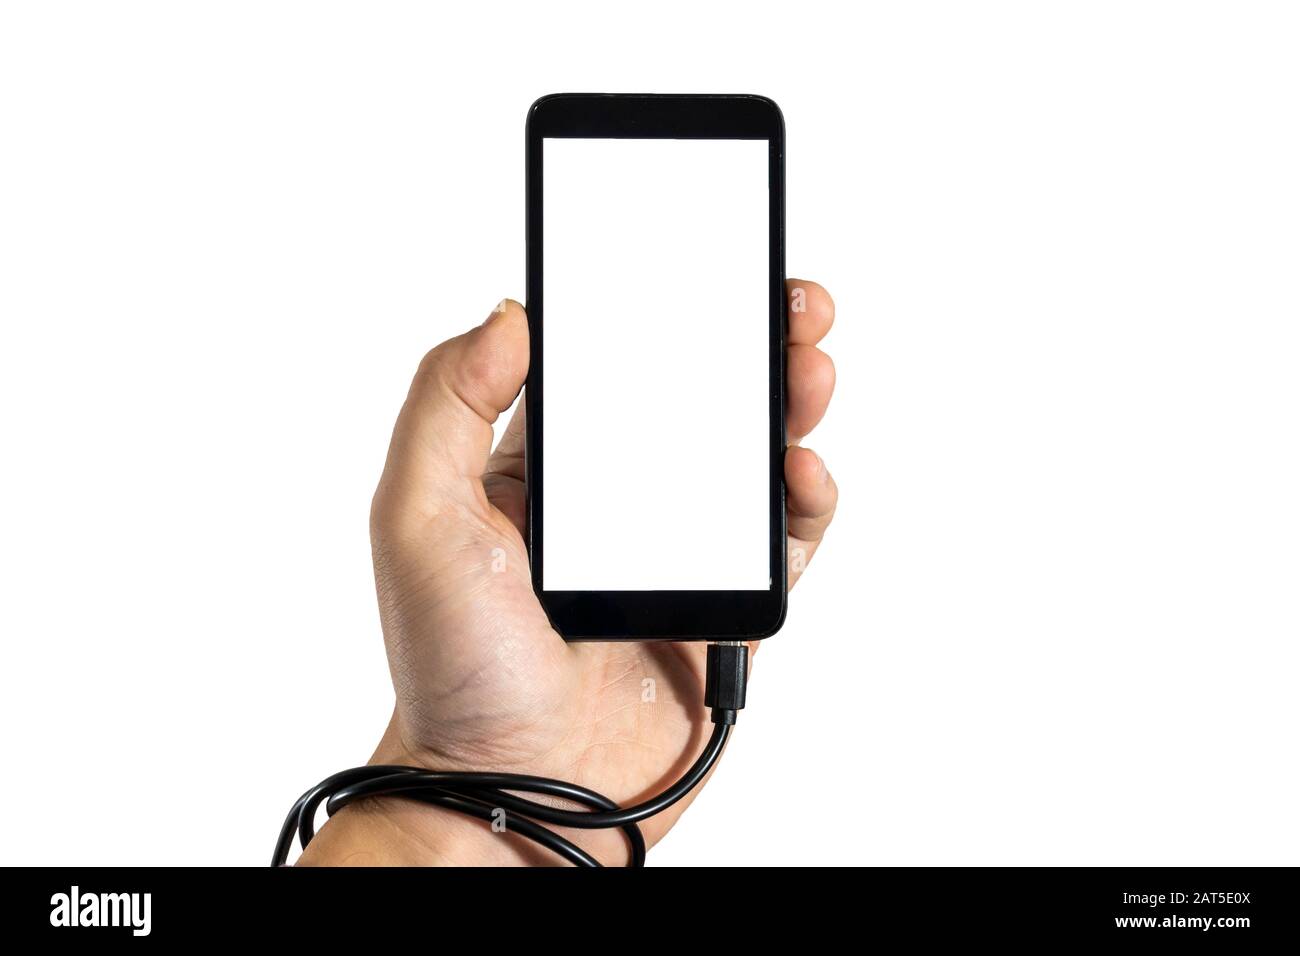 Concetto di problemi moderni. Tenere uno smartphone con cavo usb collegato intorno alla mano. Dipendenza dal telefono cellulare. Isolato su sfondo bianco. Foto Stock